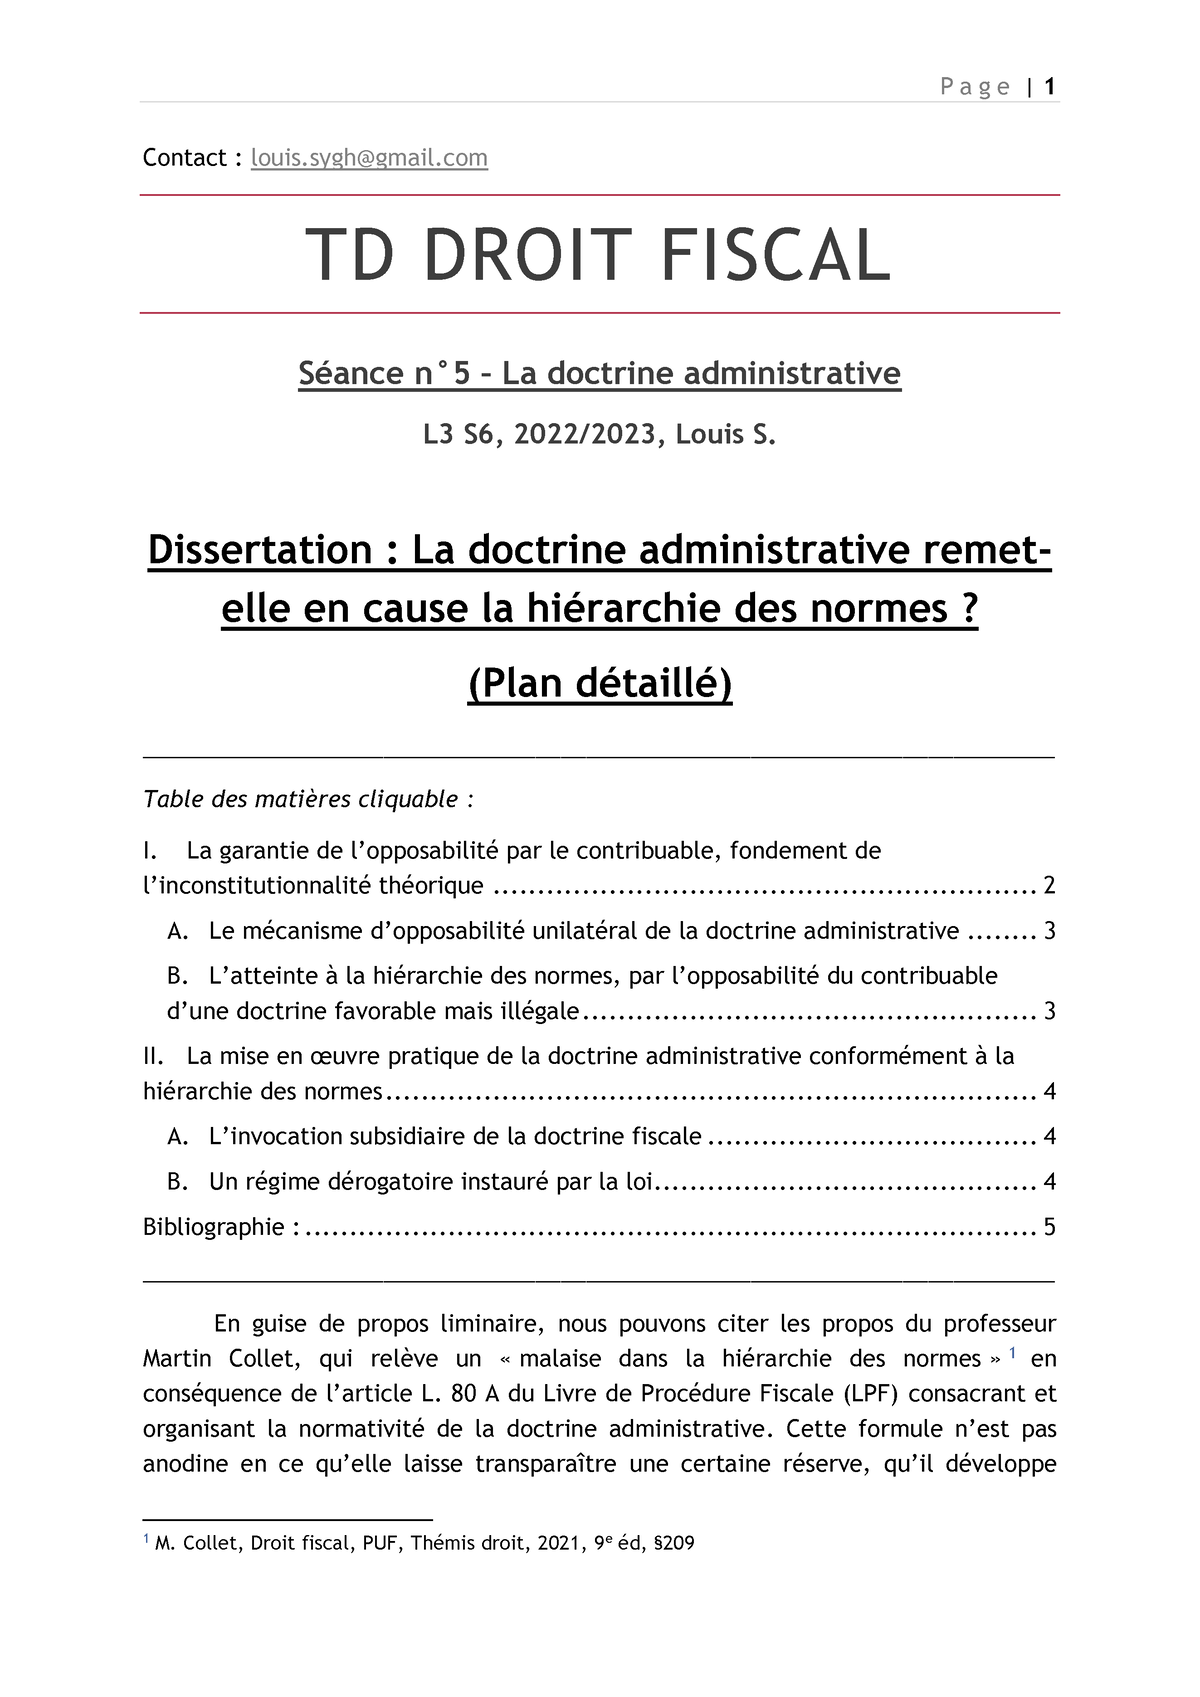 dissertation droit fiscal l3